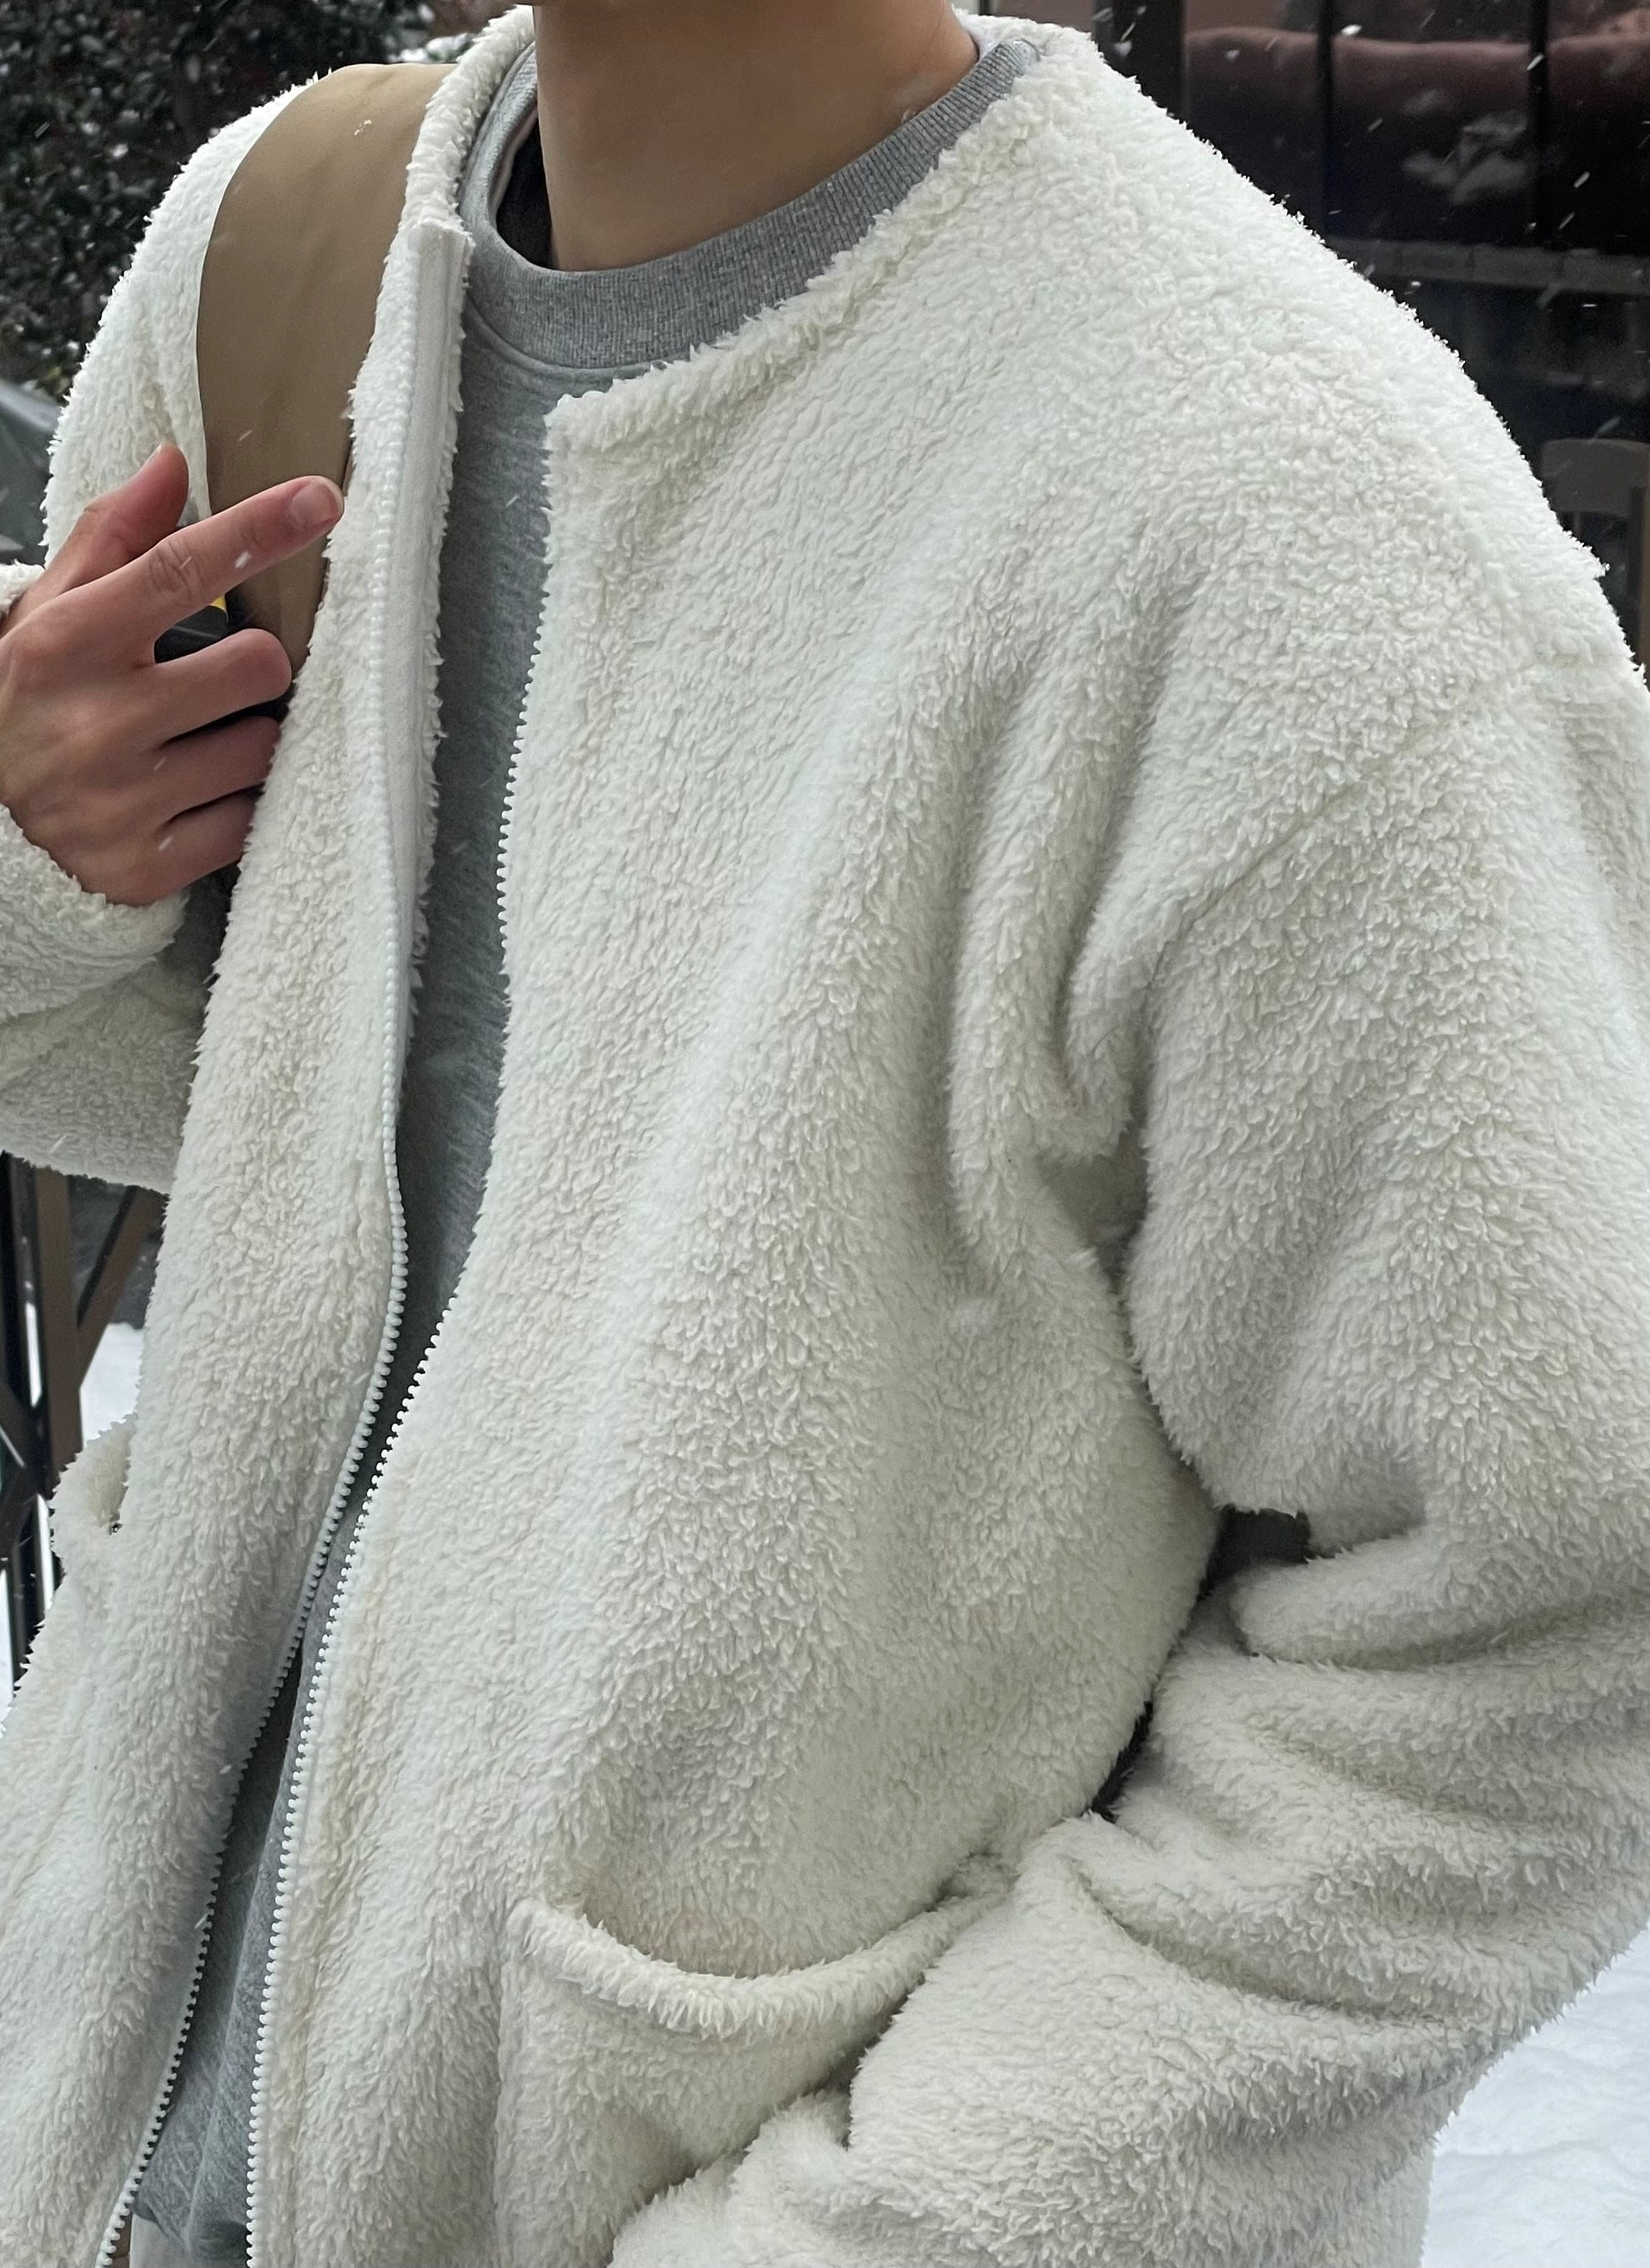 Pluffy two-way fleece jacket